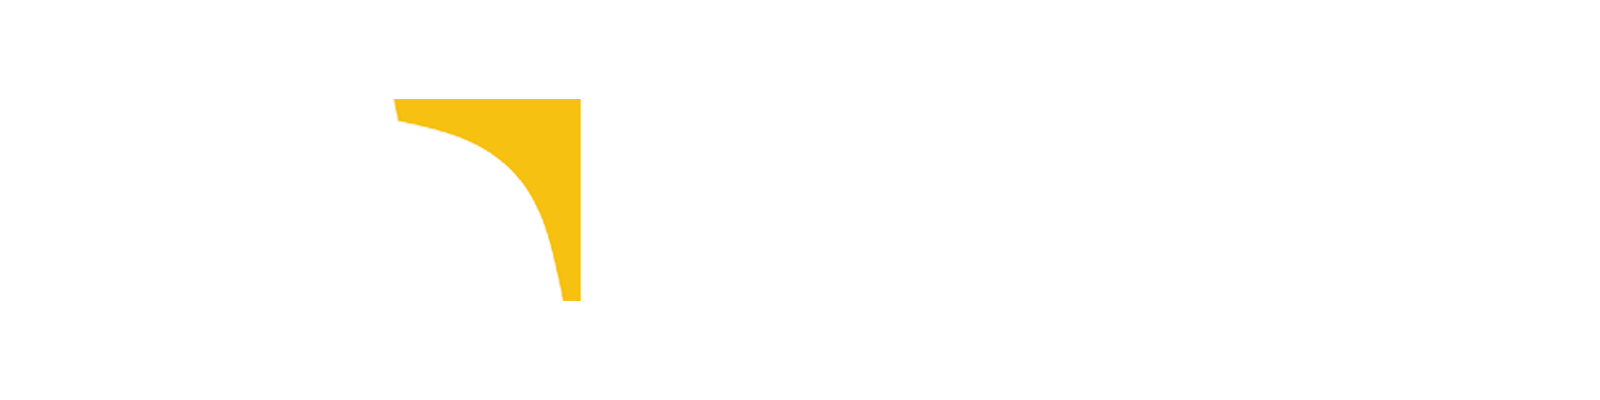 Logo étude de cas NGE